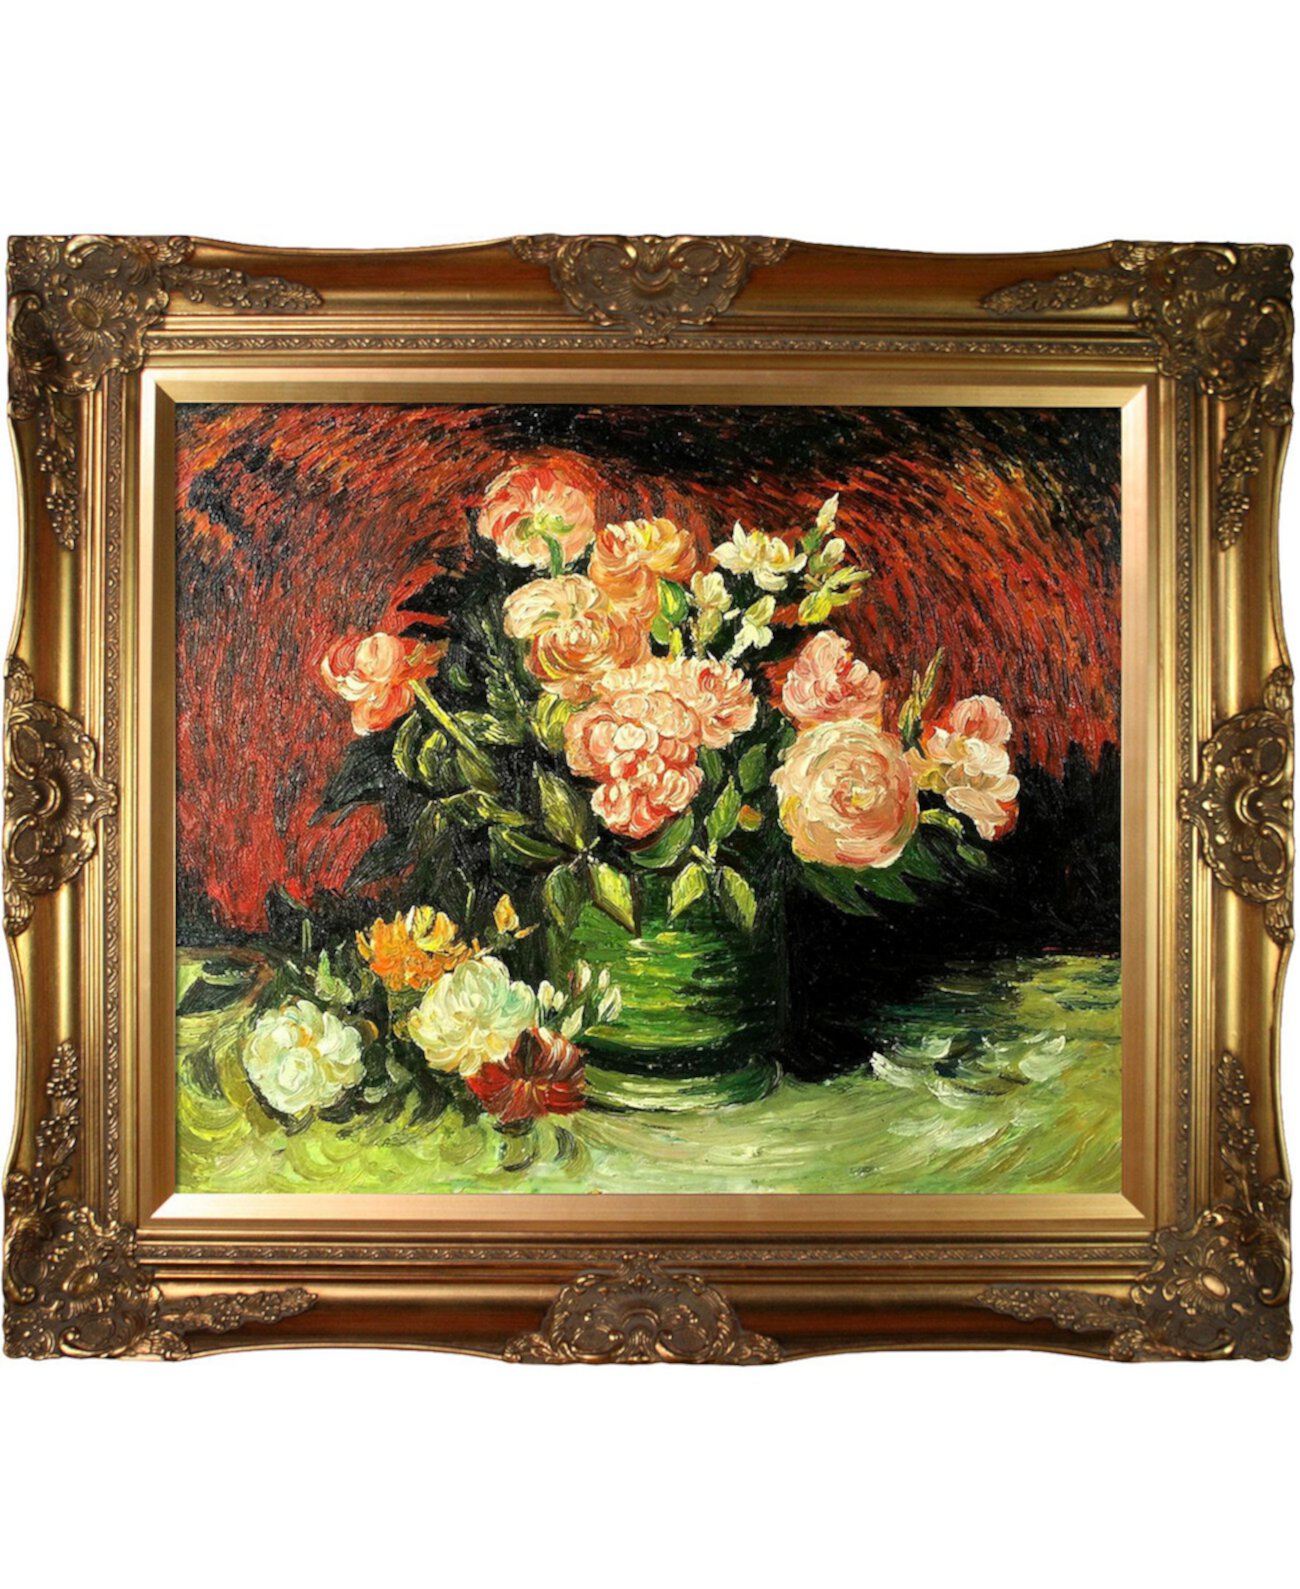 By Overstockart Чаша с пионами и розами в викторианской рамке, 28 x 32 дюйма La Pastiche